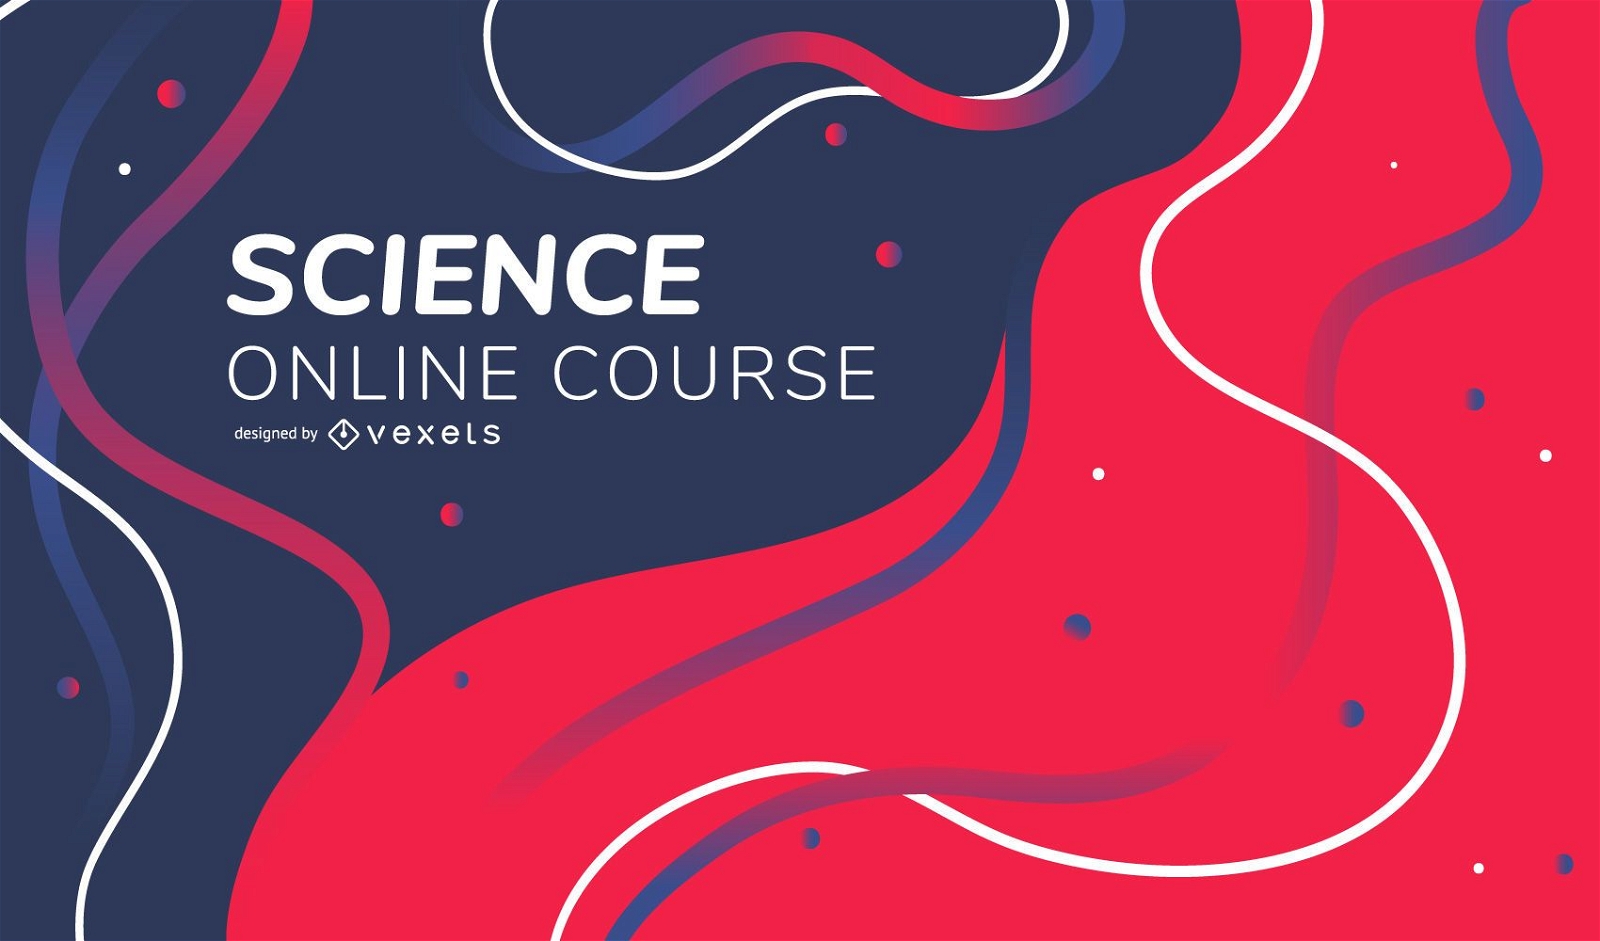 Capa do resumo do curso online de ciências